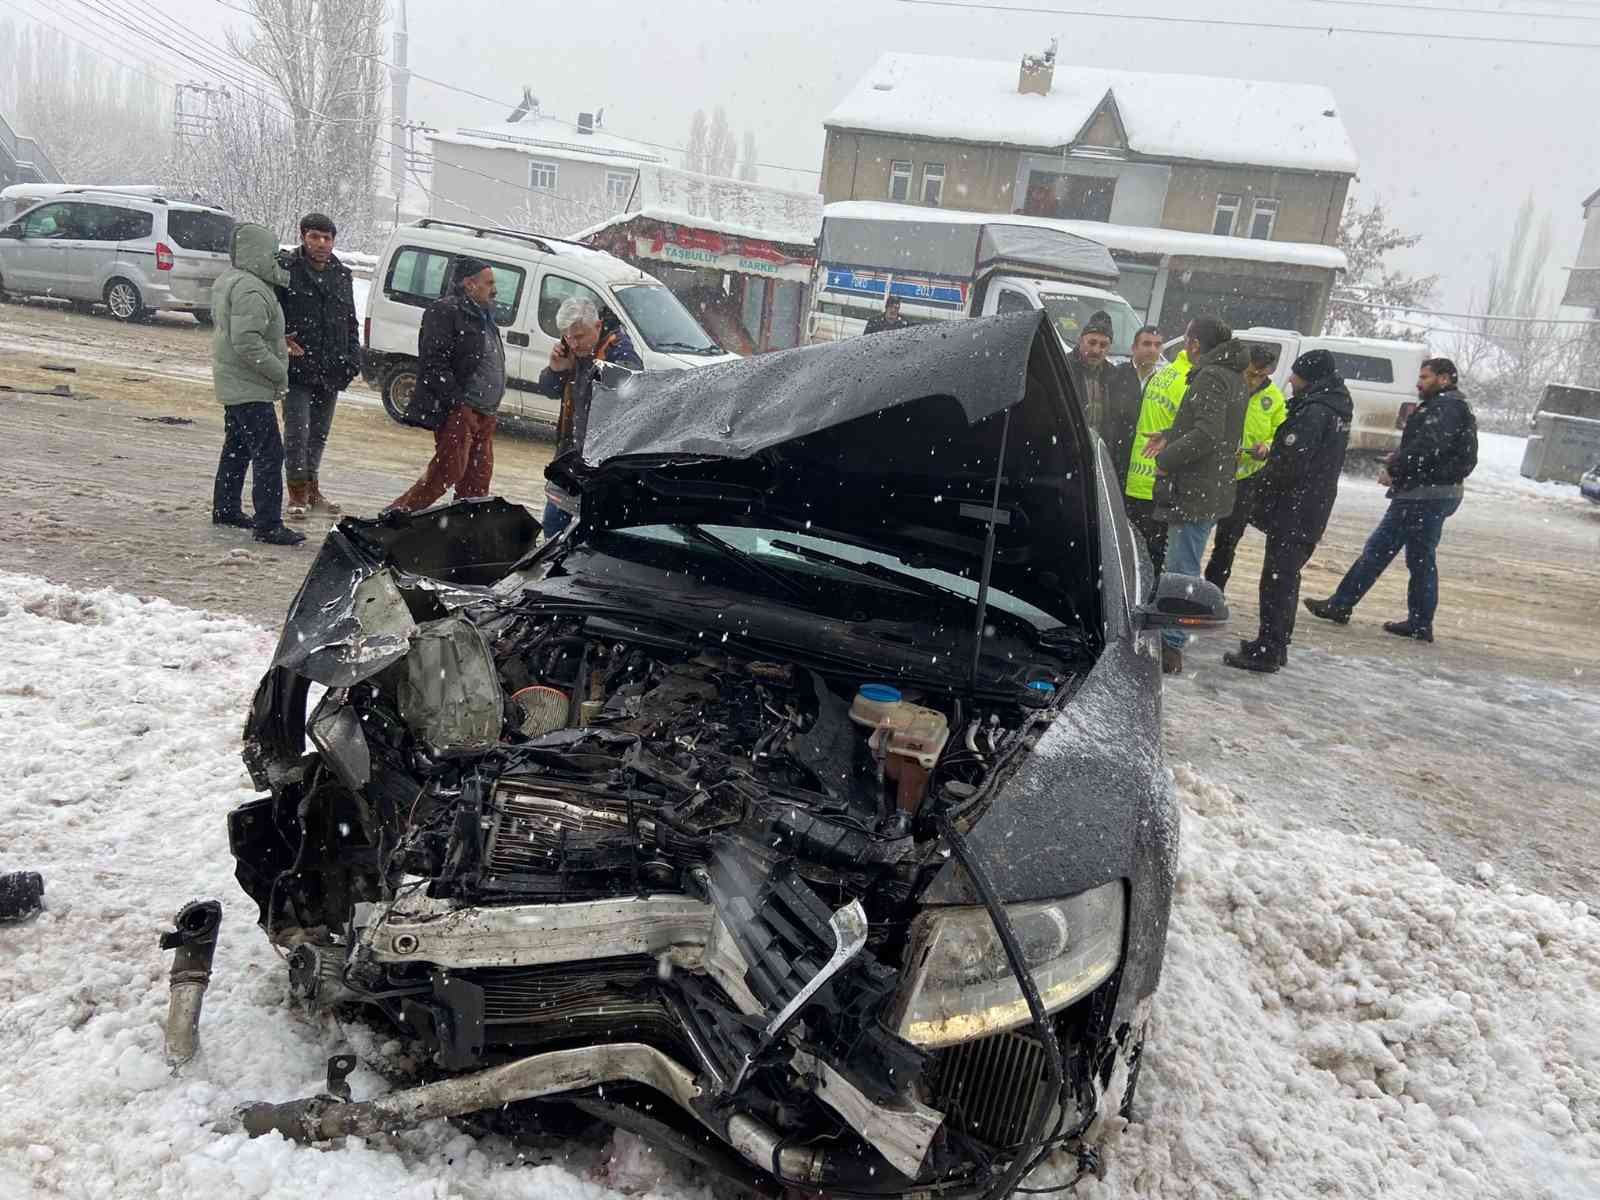 Ağrı’da trafik kazası: 4 yaralı #agri